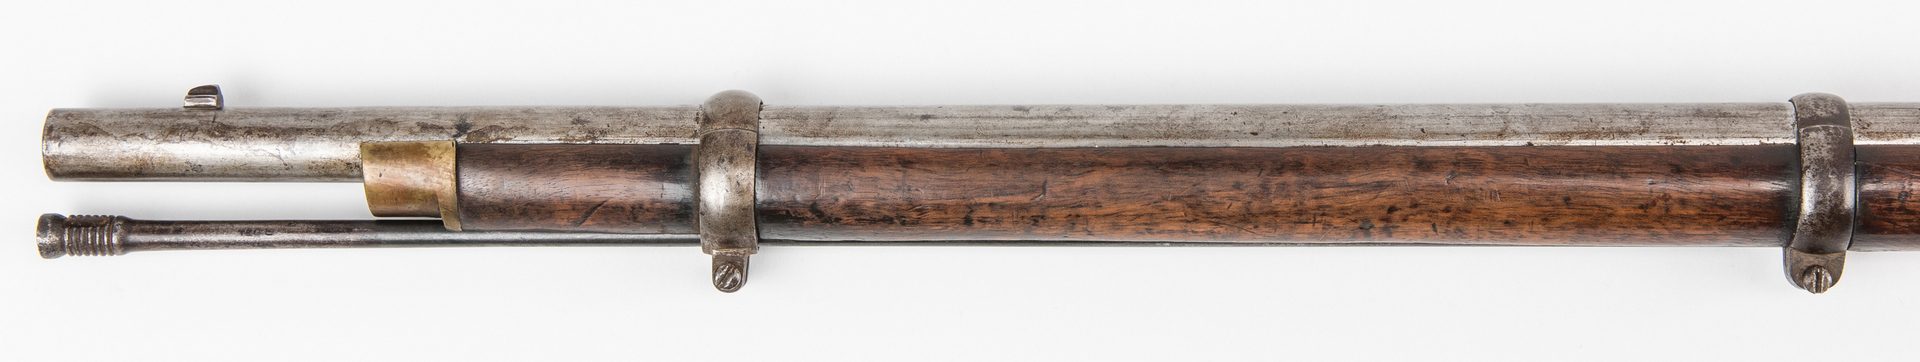 Lot 295: Confederate Blockade Run 1862 Enfield Tower Rifled Musket, .577 caliber